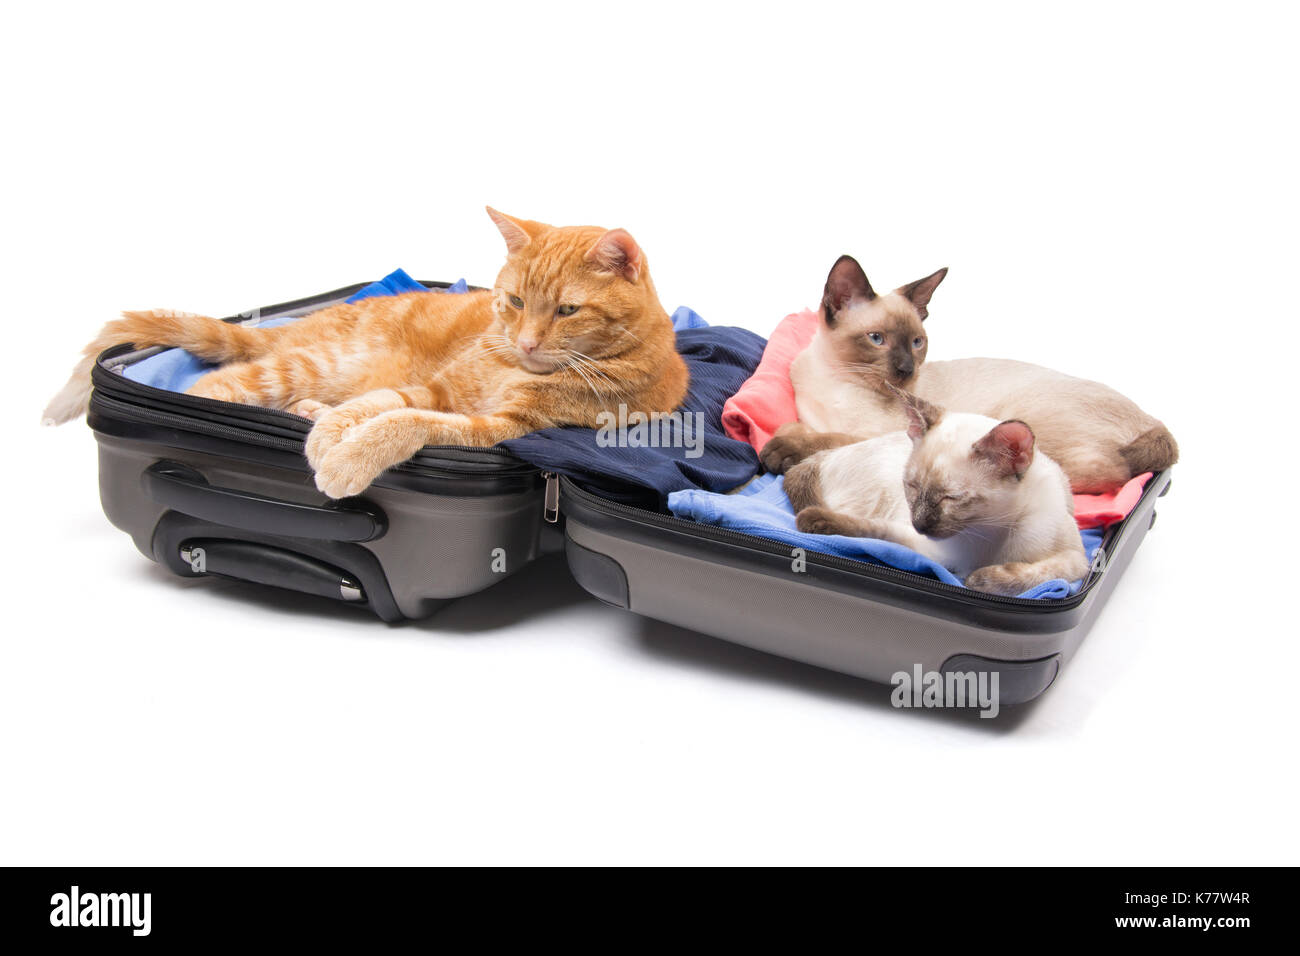 Lo zenzero tabby e due Gattini siamese relax su una aperta, imballato i bagagli, su sfondo bianco Foto Stock